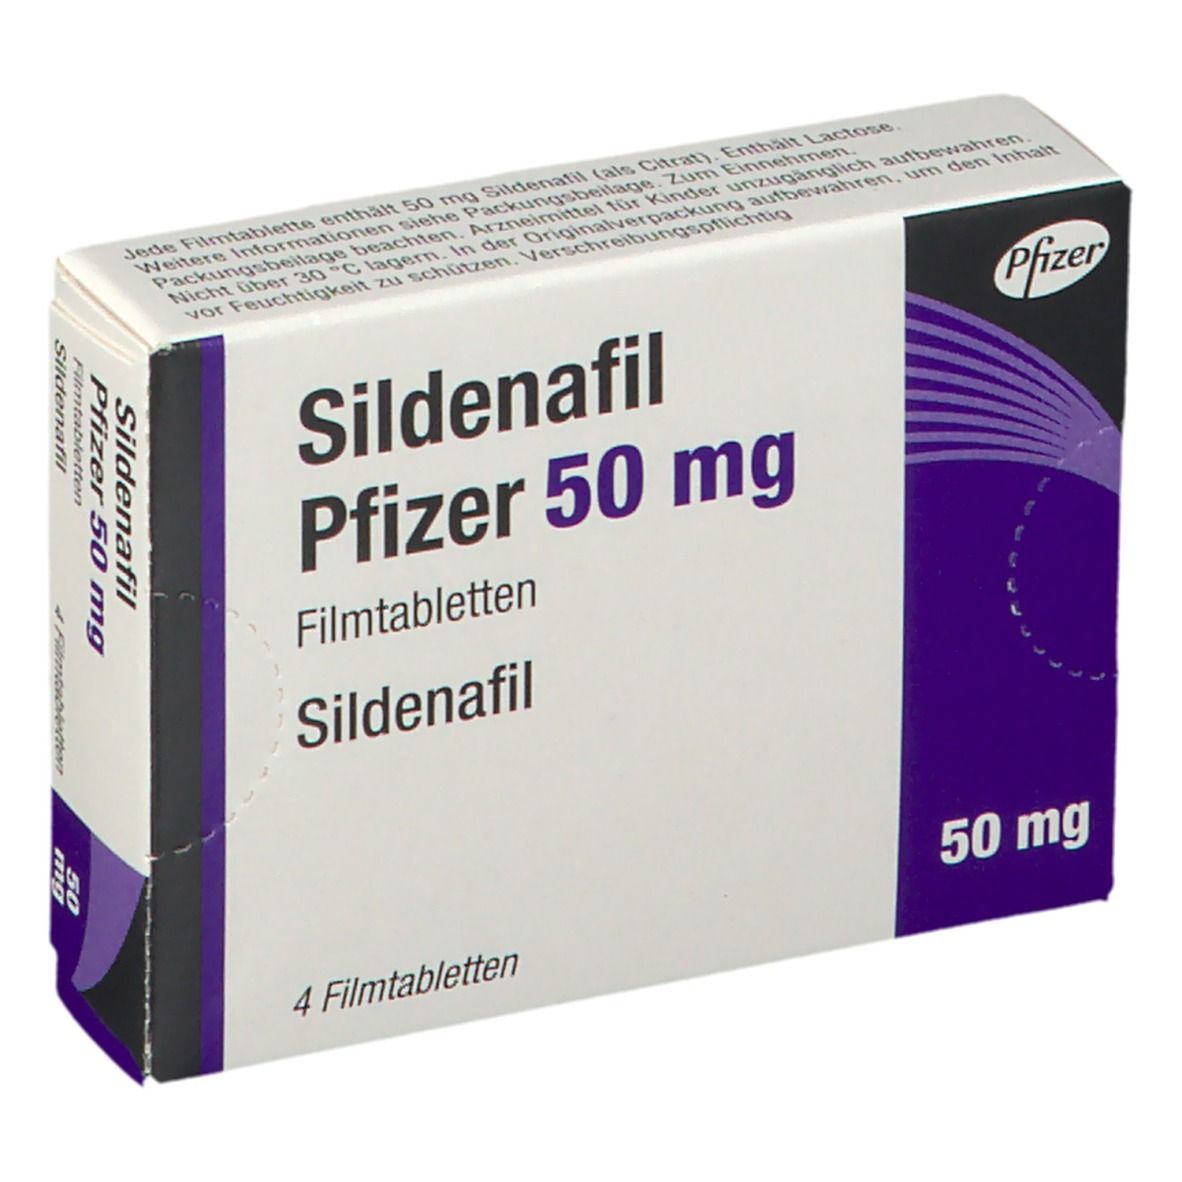 Sildenafil Pfizer 50 mg